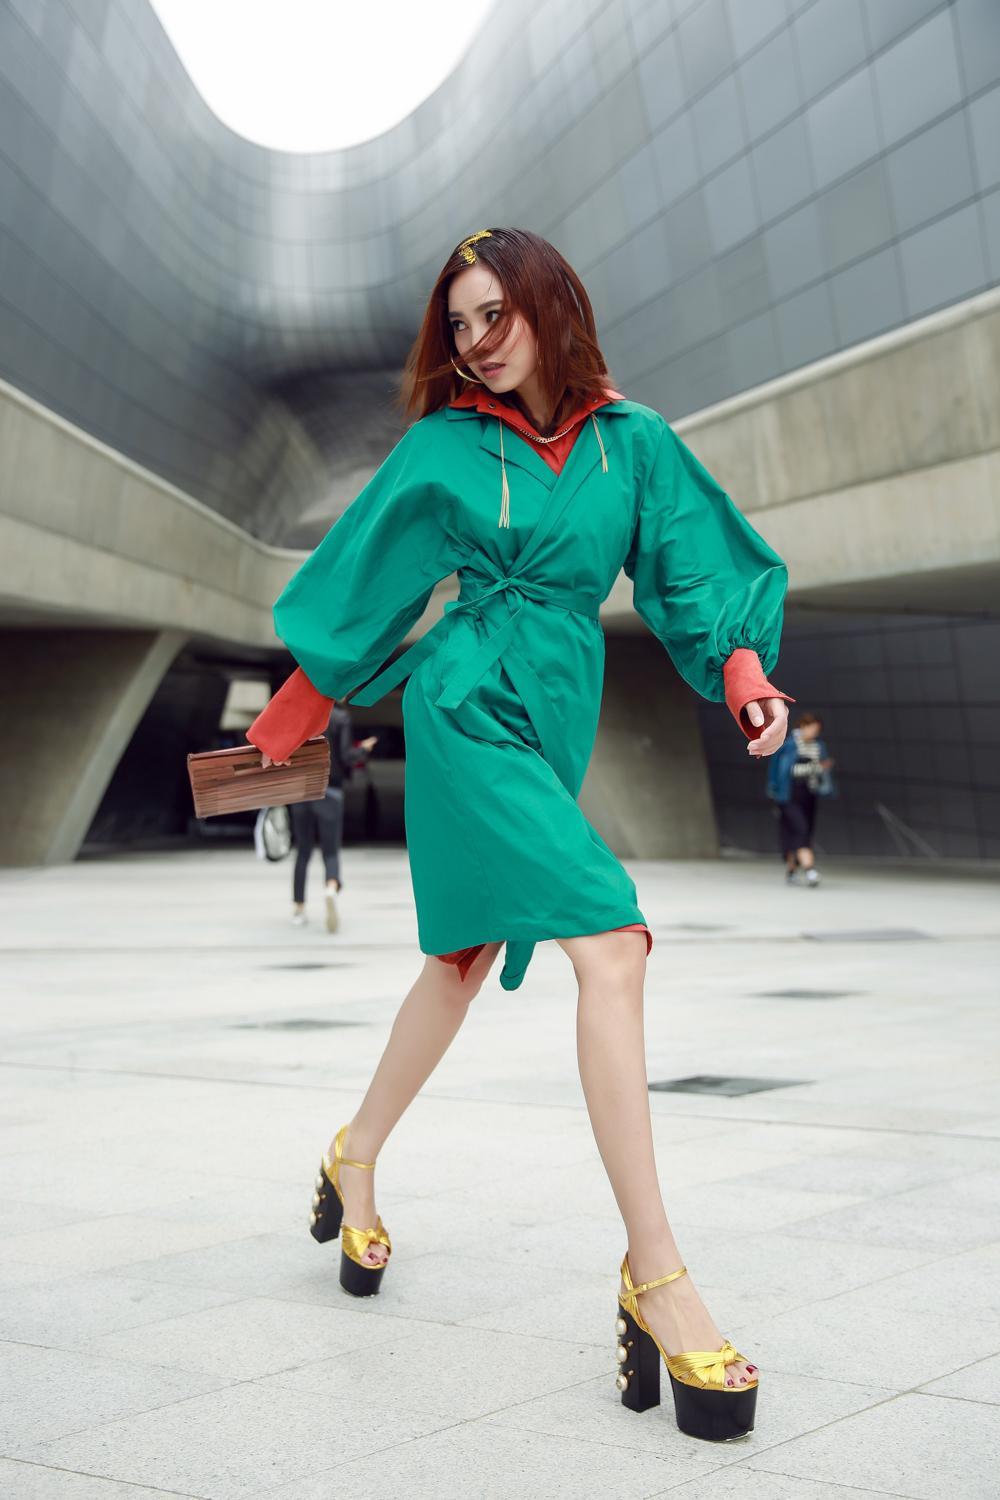 Châu Bùi - cô Ba Lan Ngọc đại náo Seoul Fashion Week với style nổi loạn-8